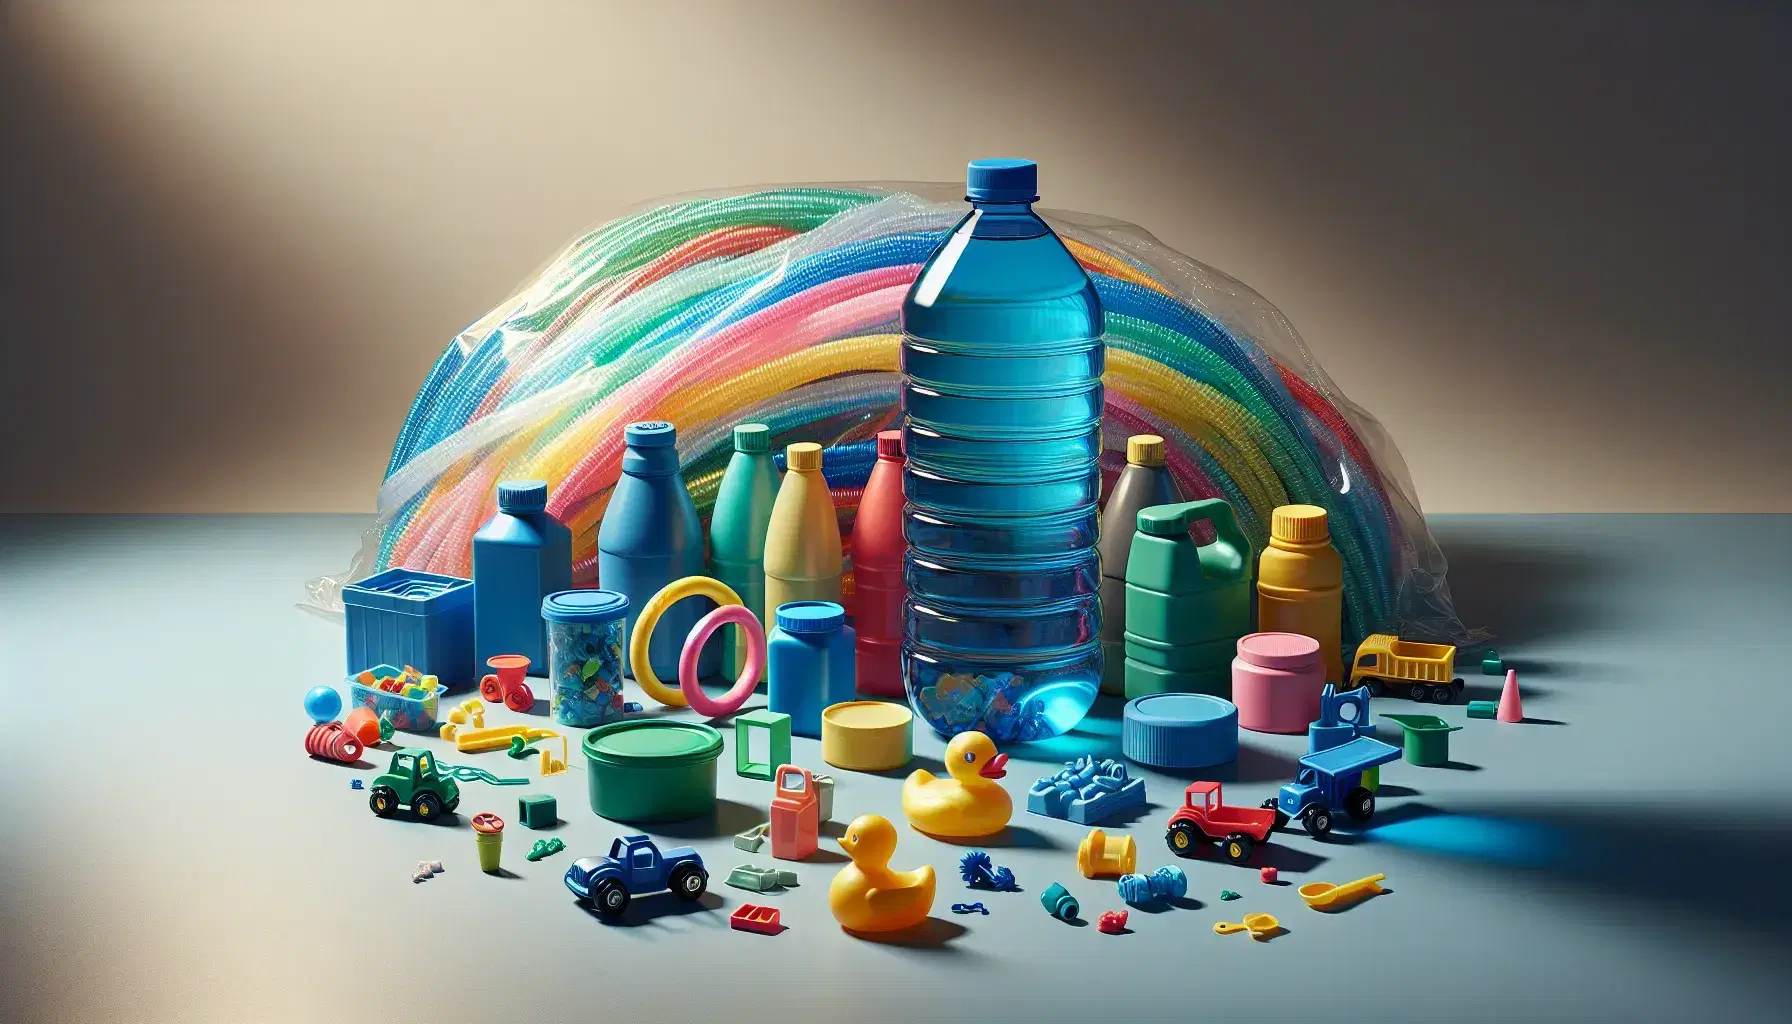 Colección de objetos de plástico coloridos con botella transparente y líquido azul, contenedores variados, fibras entrelazadas y juguetes en superficie neutra.